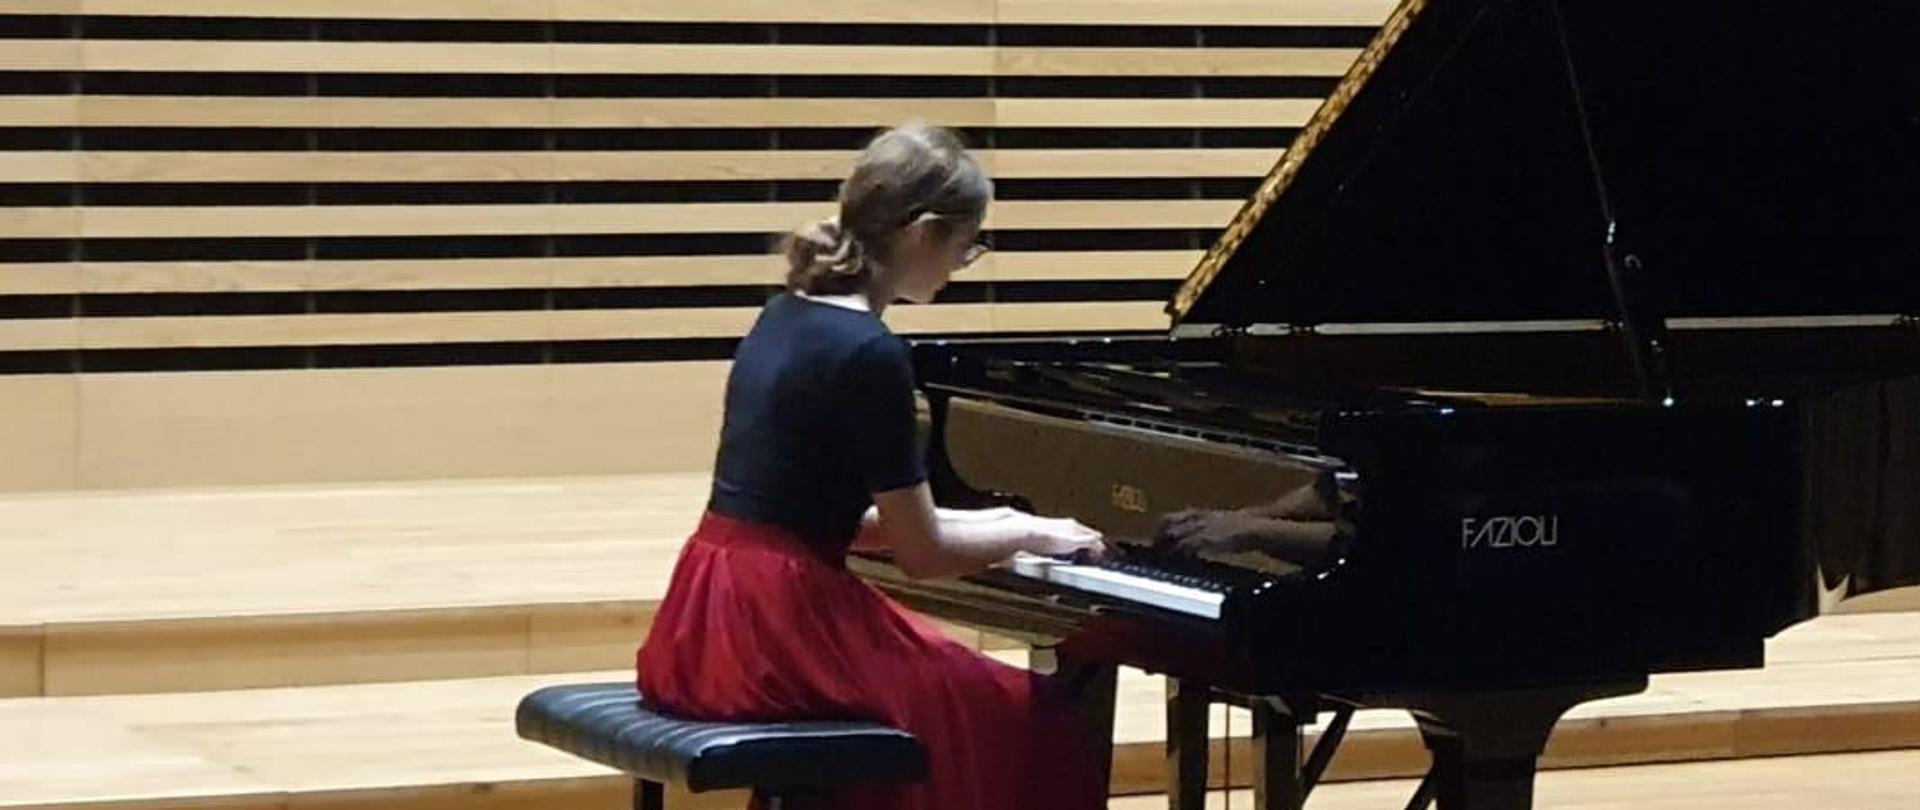 Nastolatka na estradzie sali koncertowej gra na fortepianie - zbliżenie.